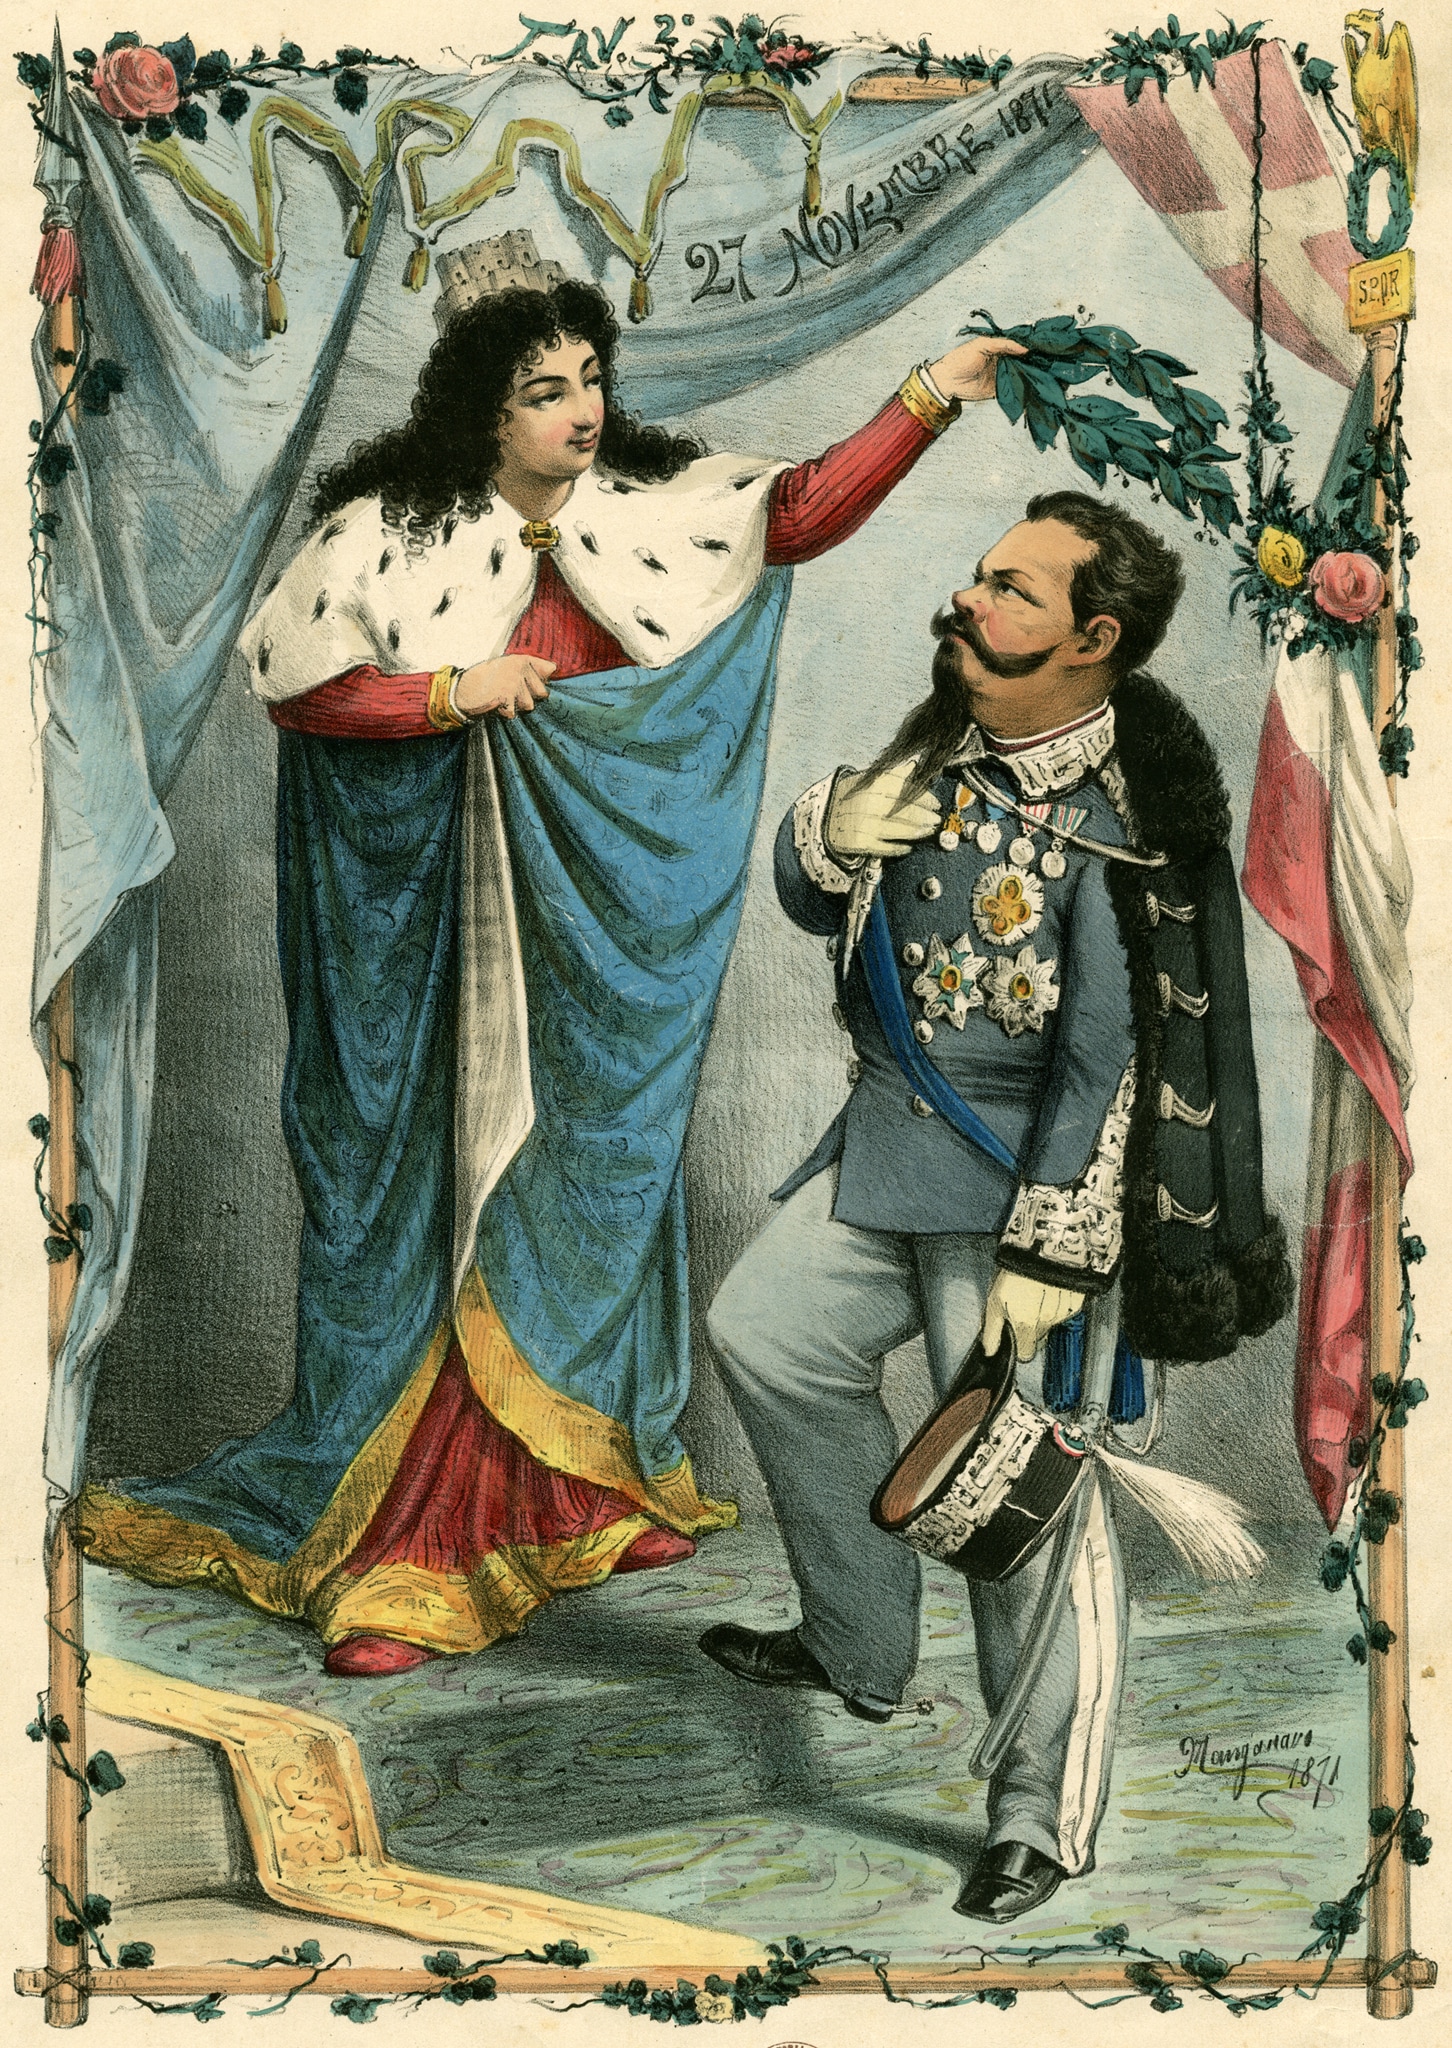 Incisione allegorica sul Vittorio Emanuele re d’Italia nel 1871